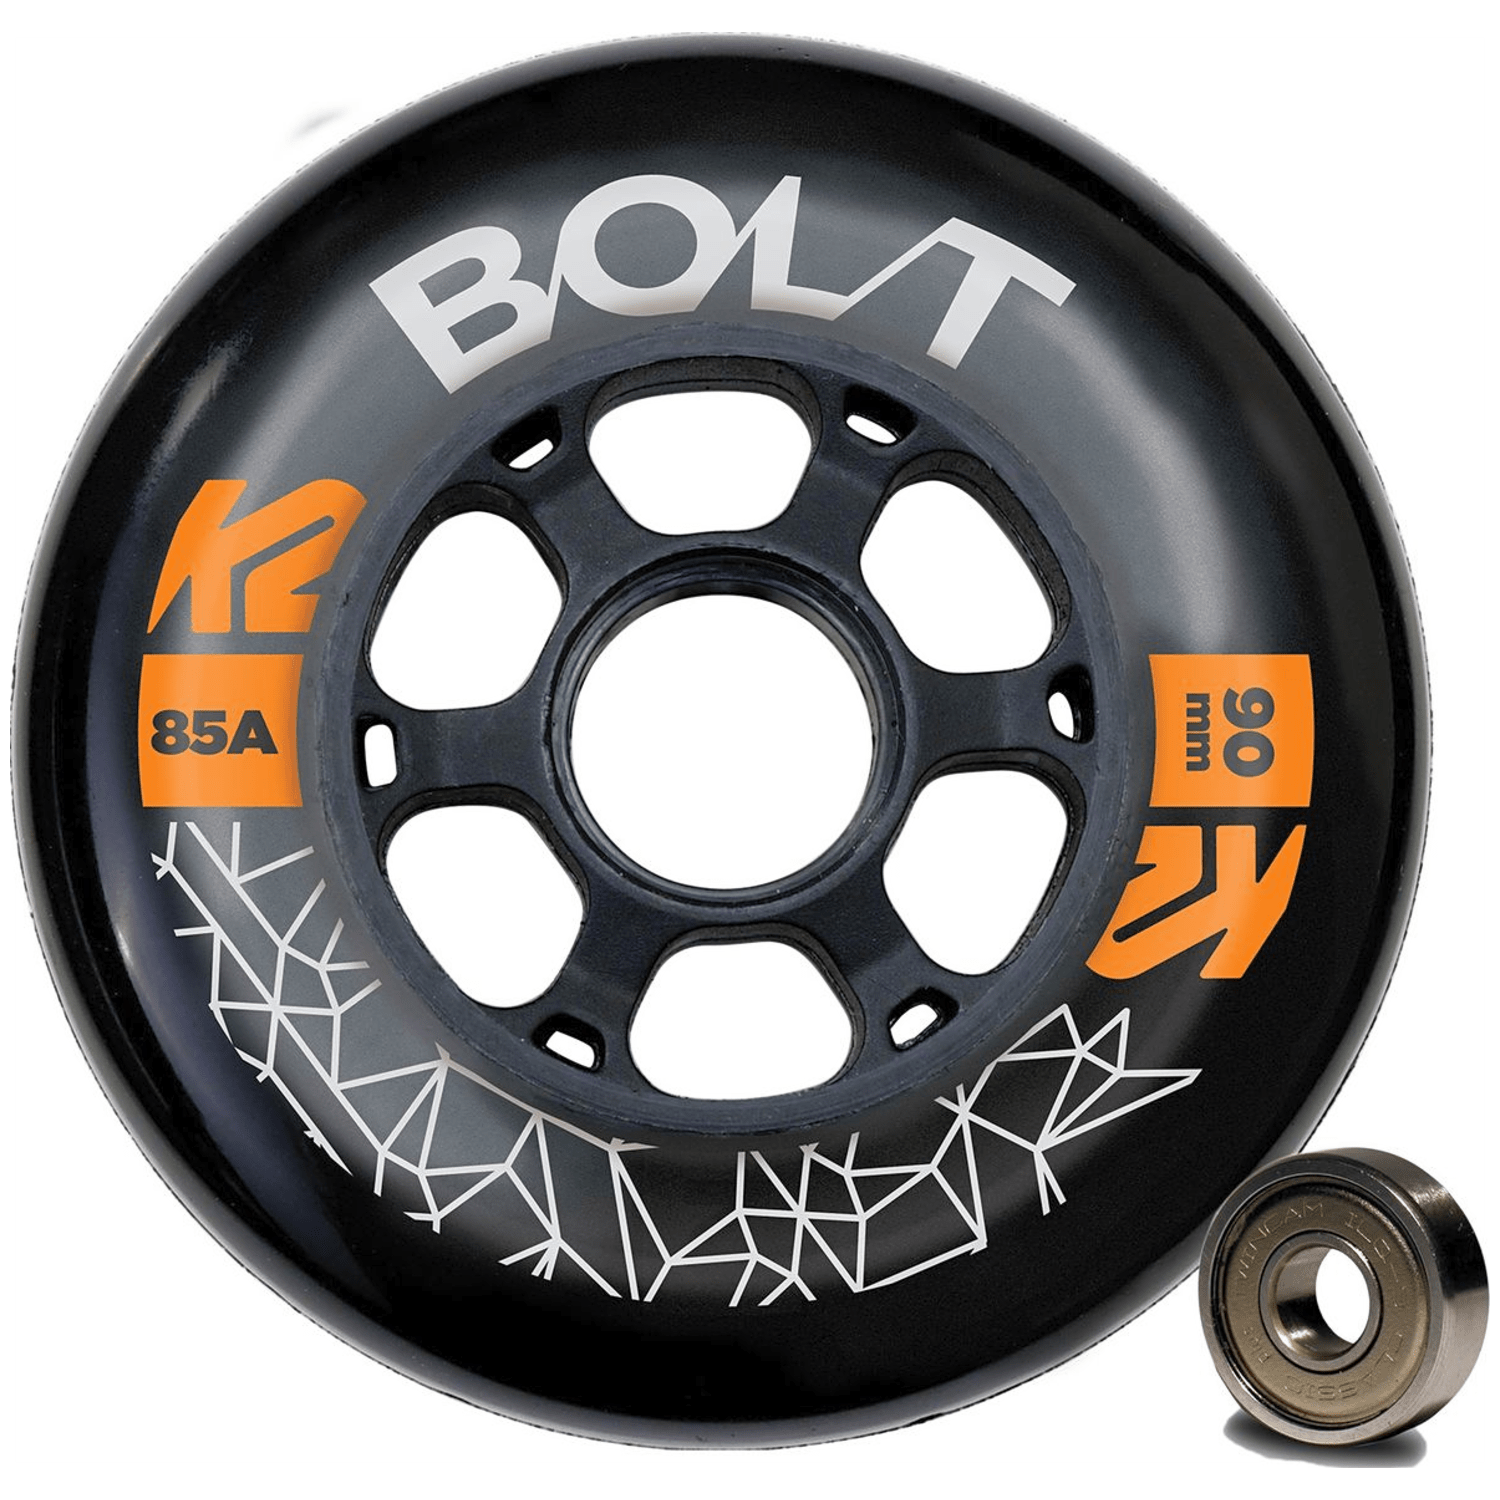 K2 Bolt 90 Mm 85A 8-Wheel Pack W Ilq 9 Inlineskate-Rollen